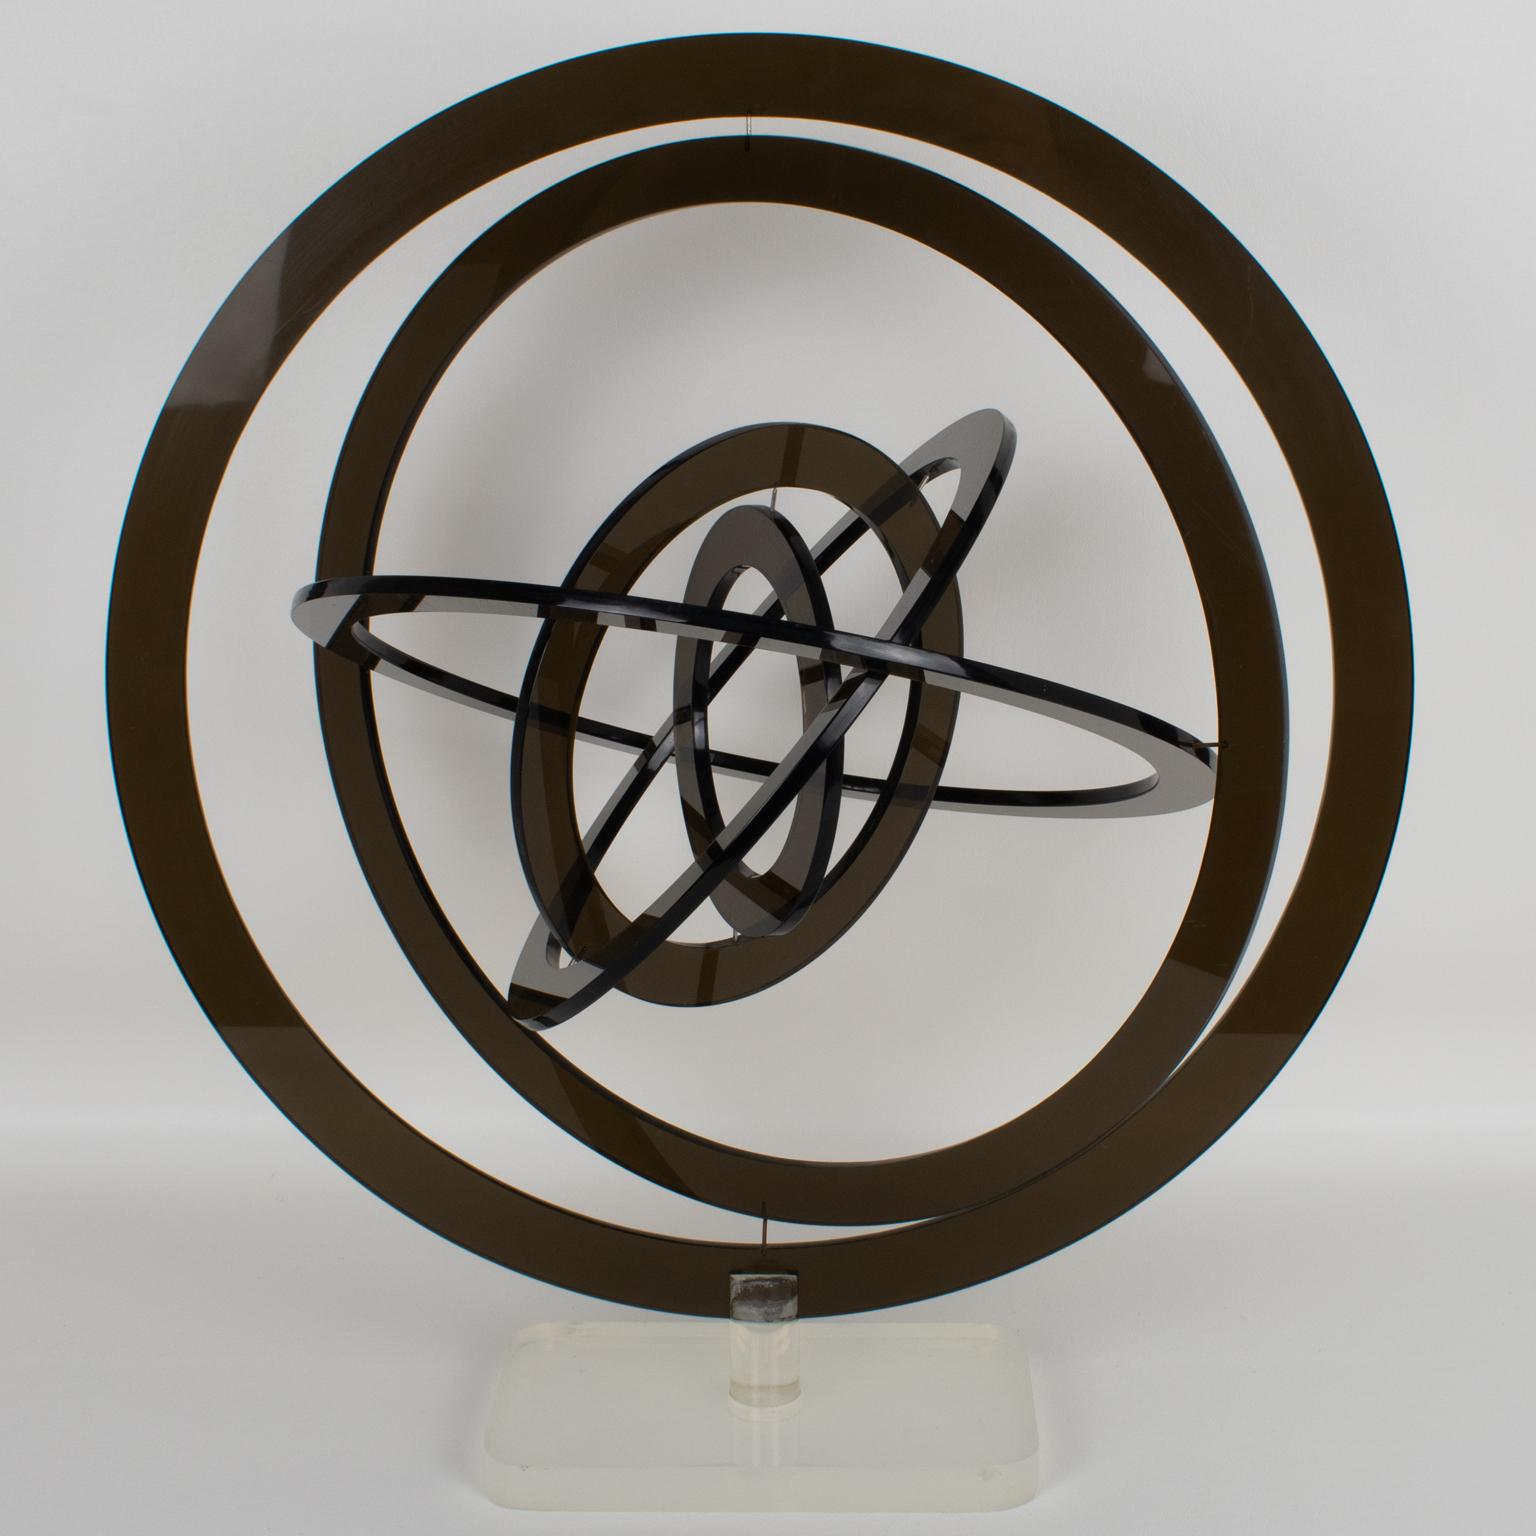 Diese atemberaubende rotierende kinetische Skulptur wurde in den 1970er Jahren in Italien hergestellt. Die sechs Kreise sind aus rauchgrauem Lucite gefertigt und stehen auf einem mattierten, klaren Lucite-Sockel. Die sechs konzentrischen Kreise, aus